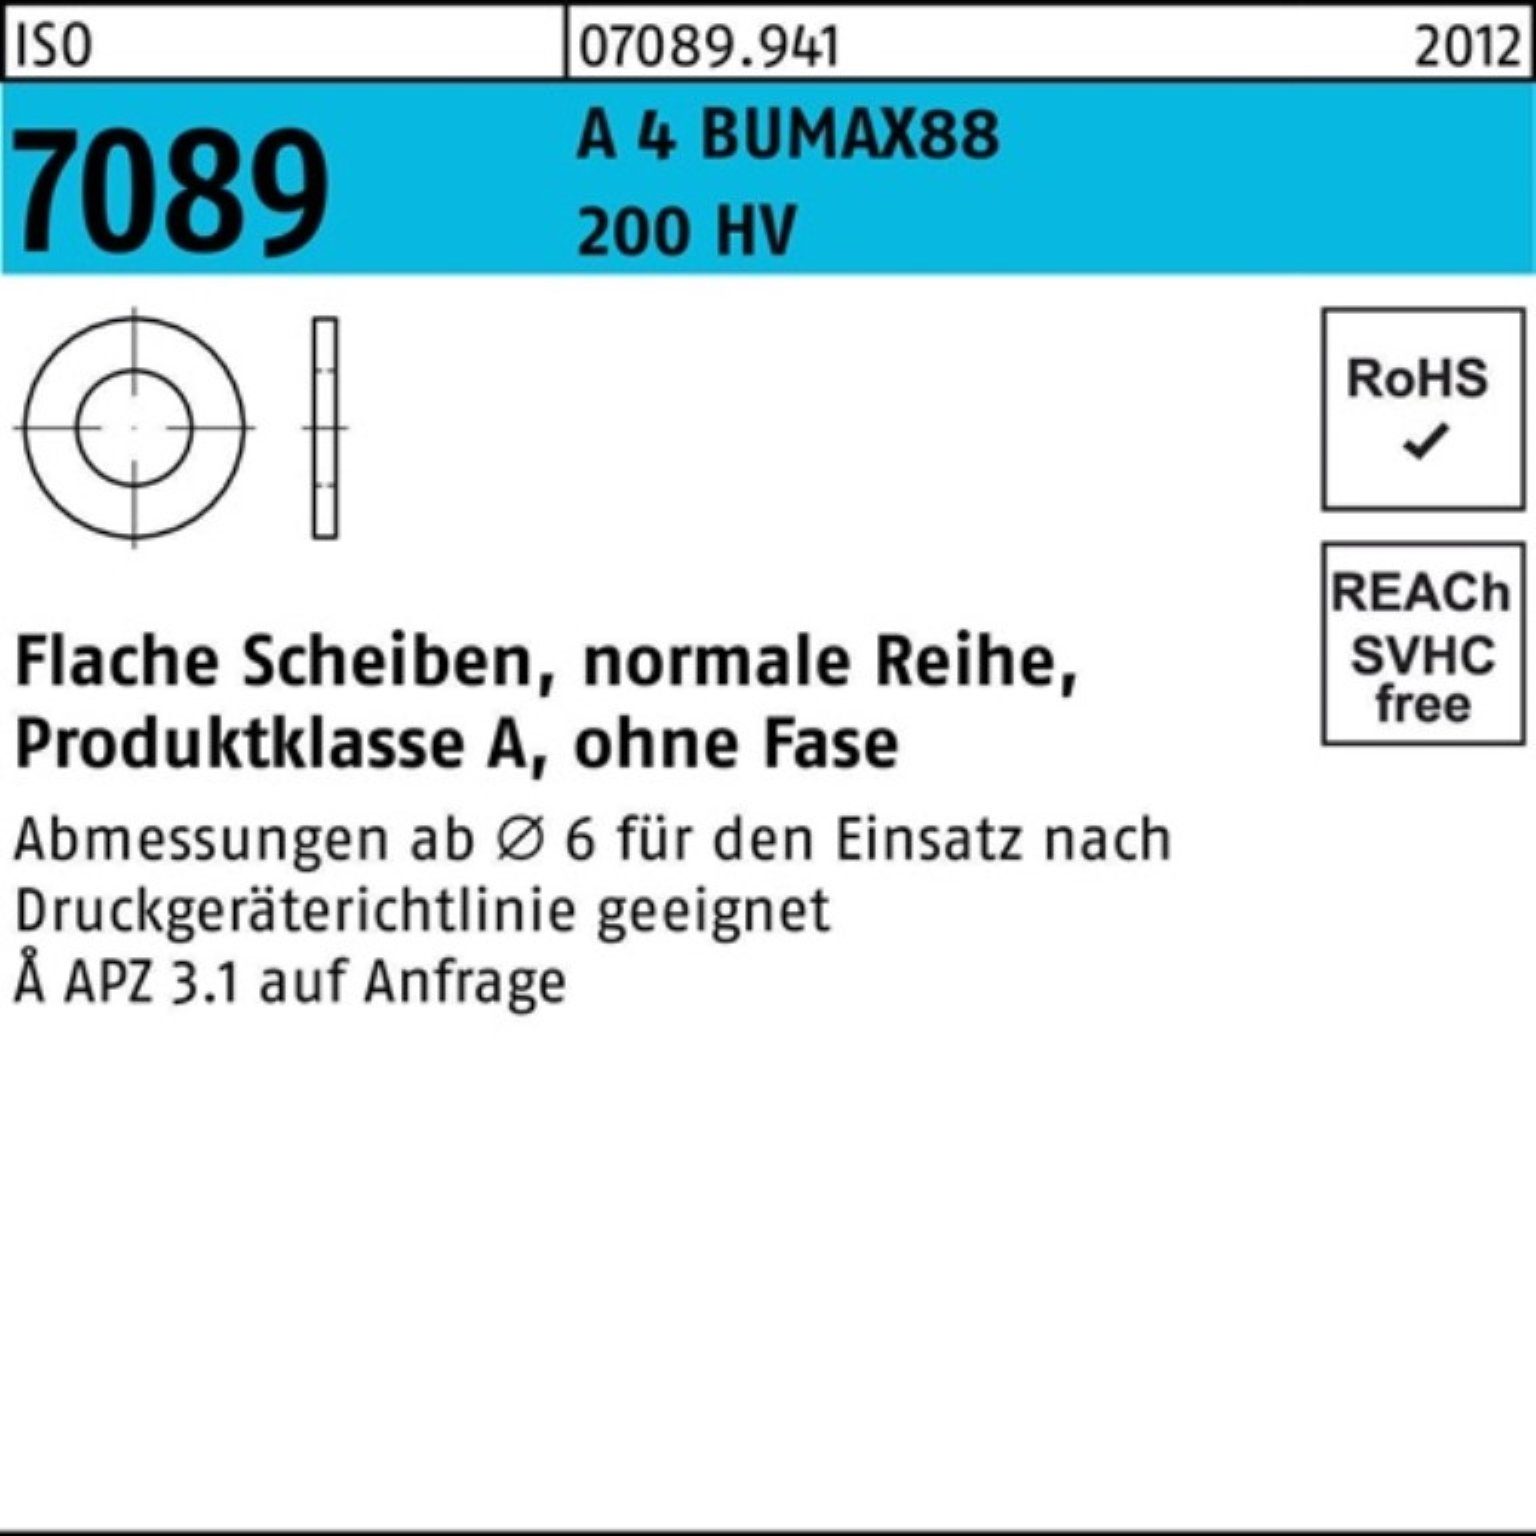 Bufab Unterlegscheibe 100er Pack A 24 50 St Unterlegscheibe o.Fase ISO 7089 BUMAX88 200 HV 4